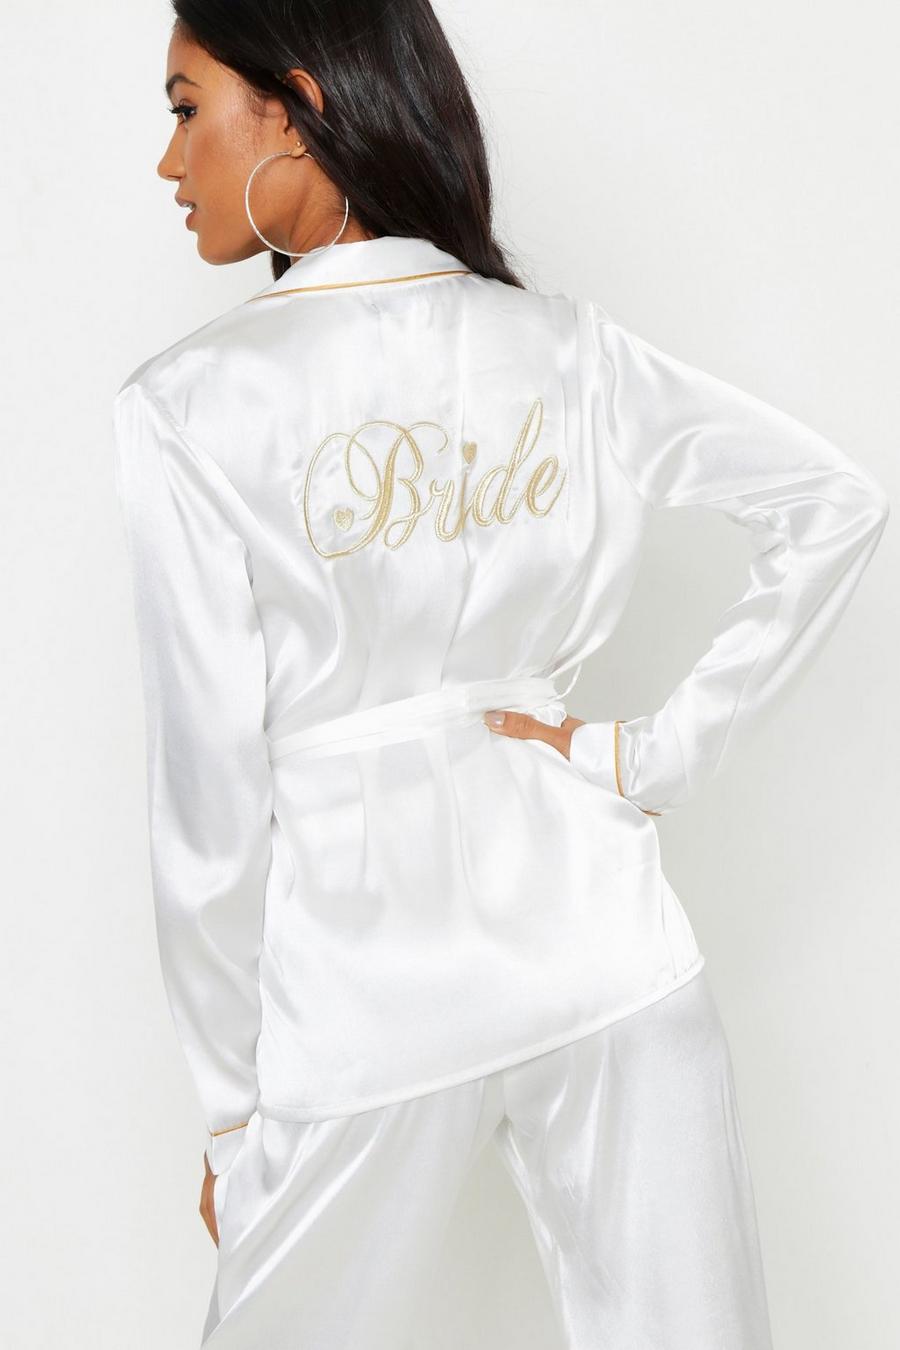 Bride Wickel Pyjama-Set, Elfenbeinfarben white